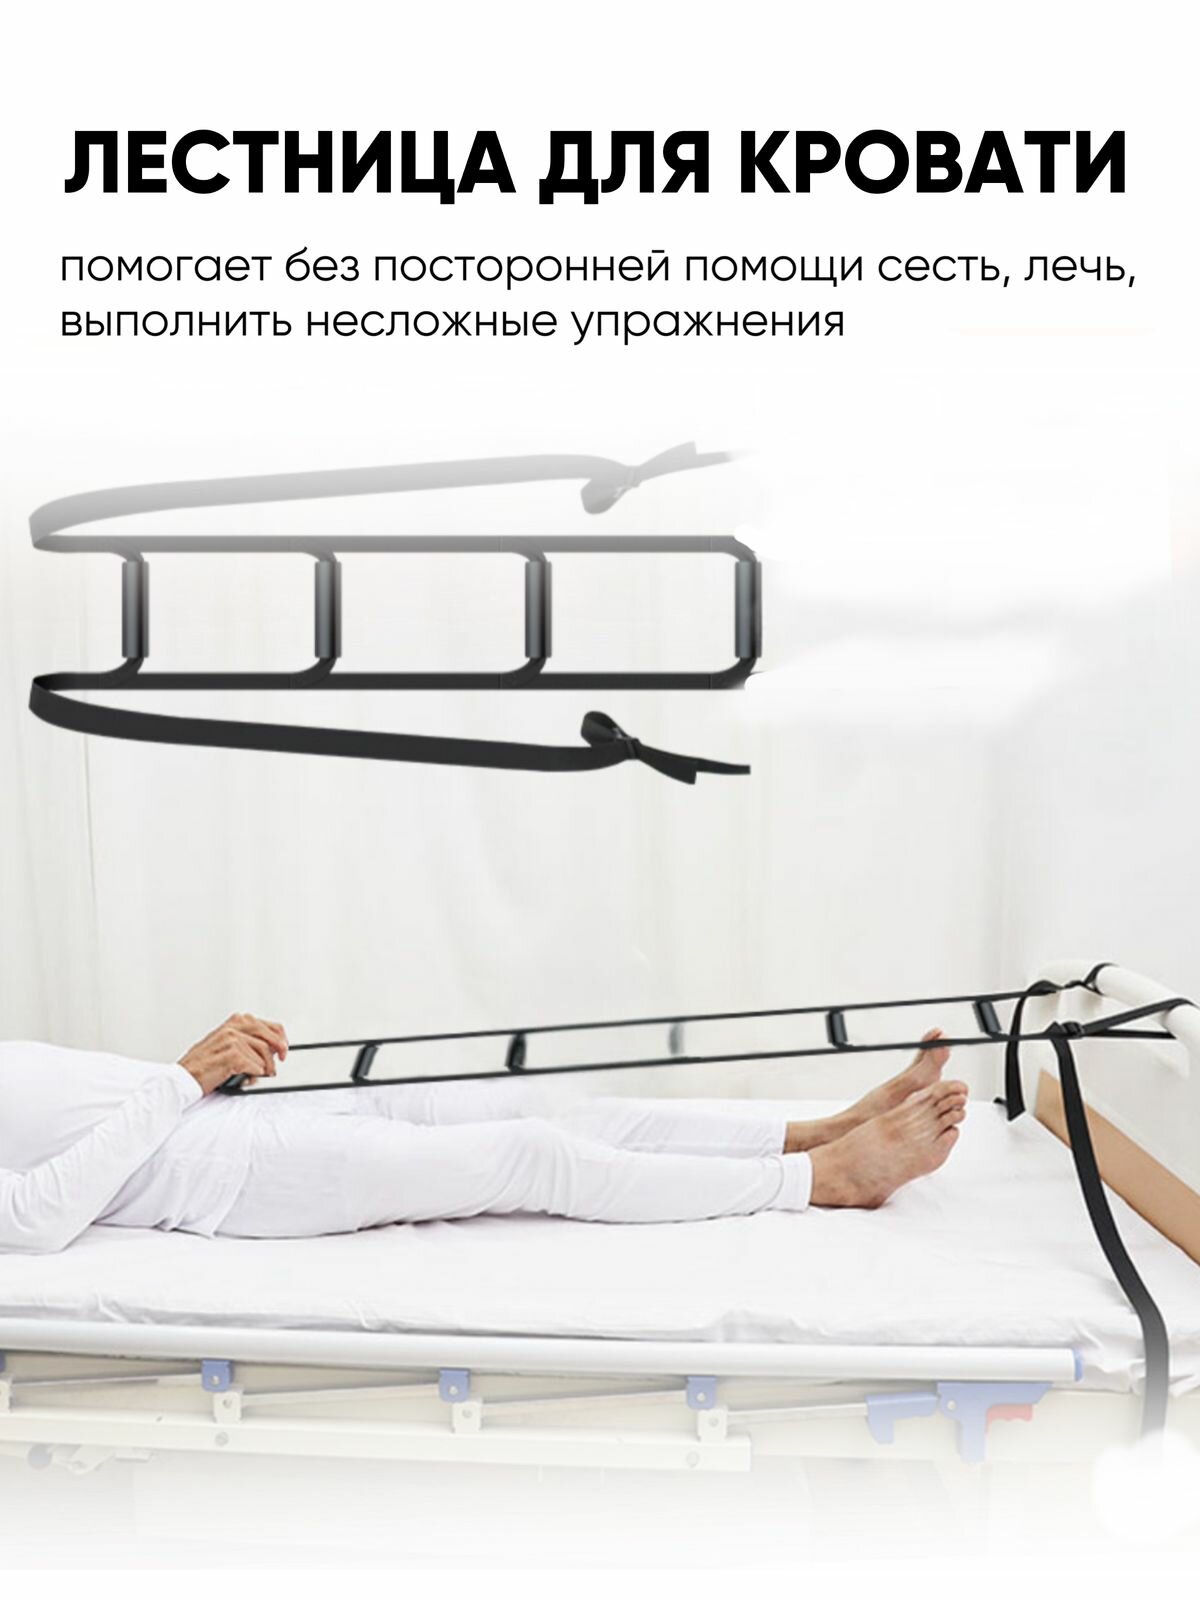 Верёвочная лестница для подъёма с кровати